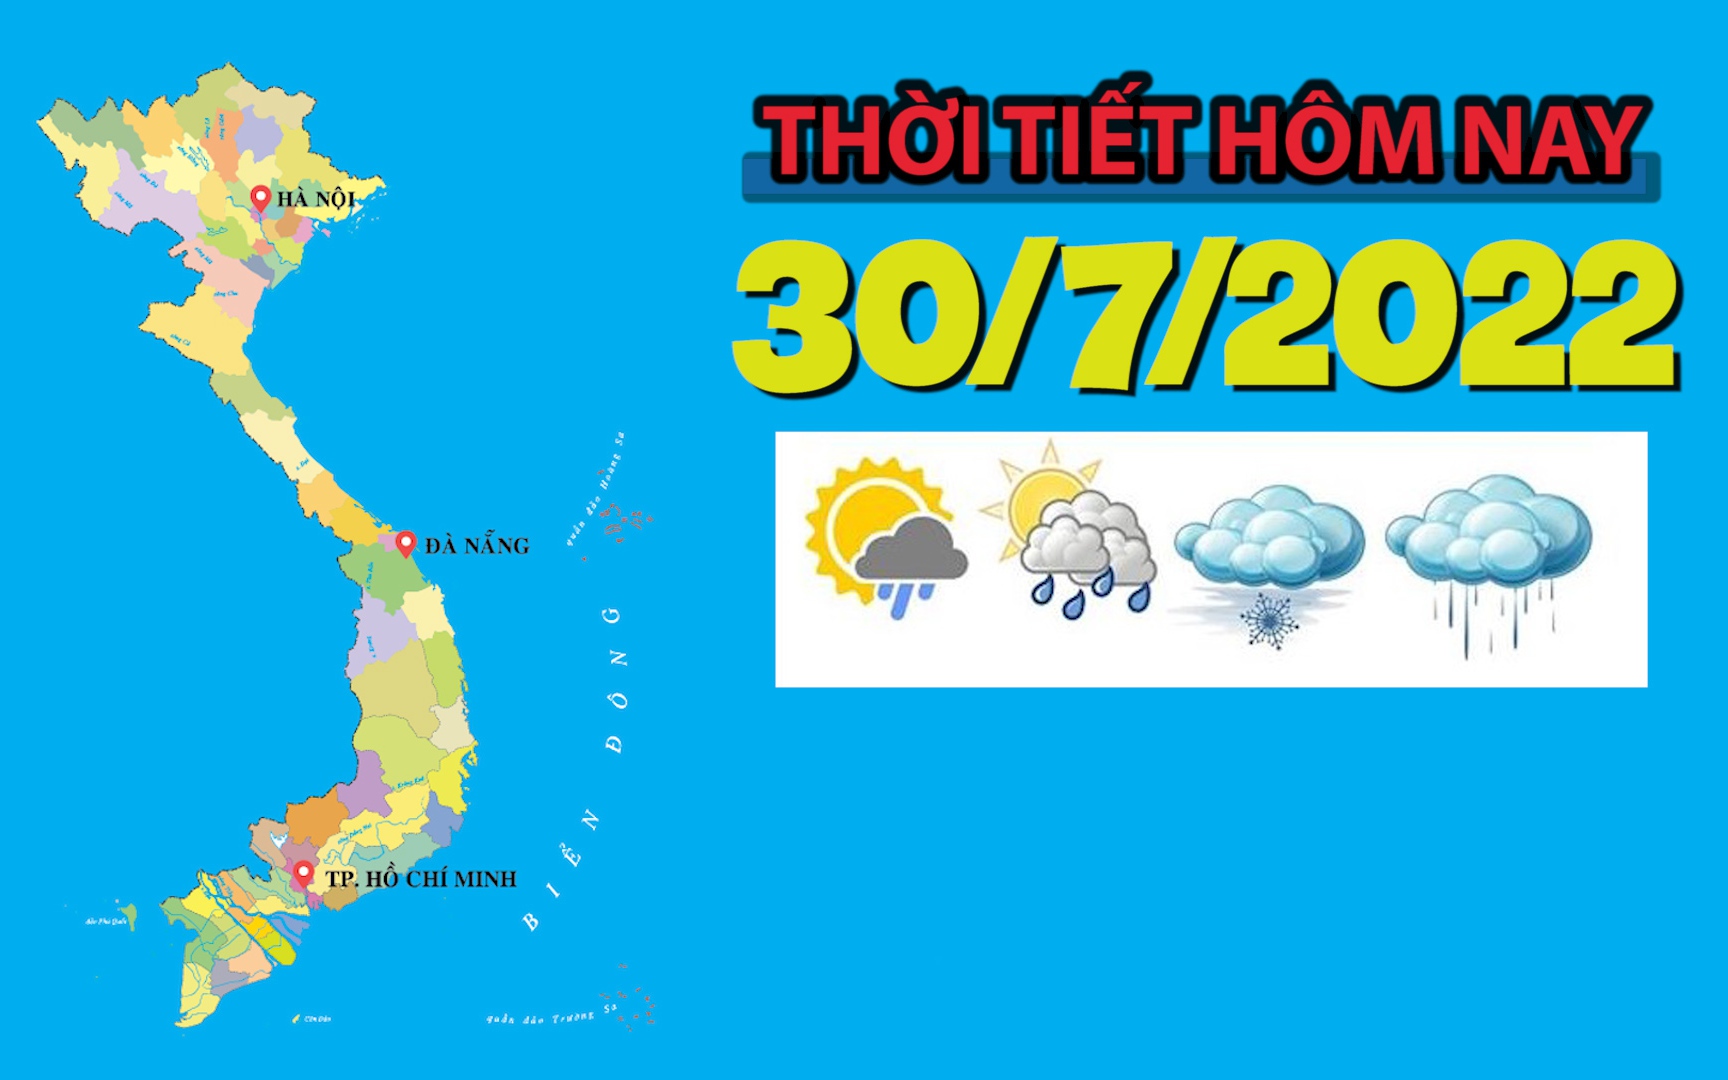 Thời tiết hôm nay 30/7/2022: Hà Nội mưa rào, cục bộ có mưa to